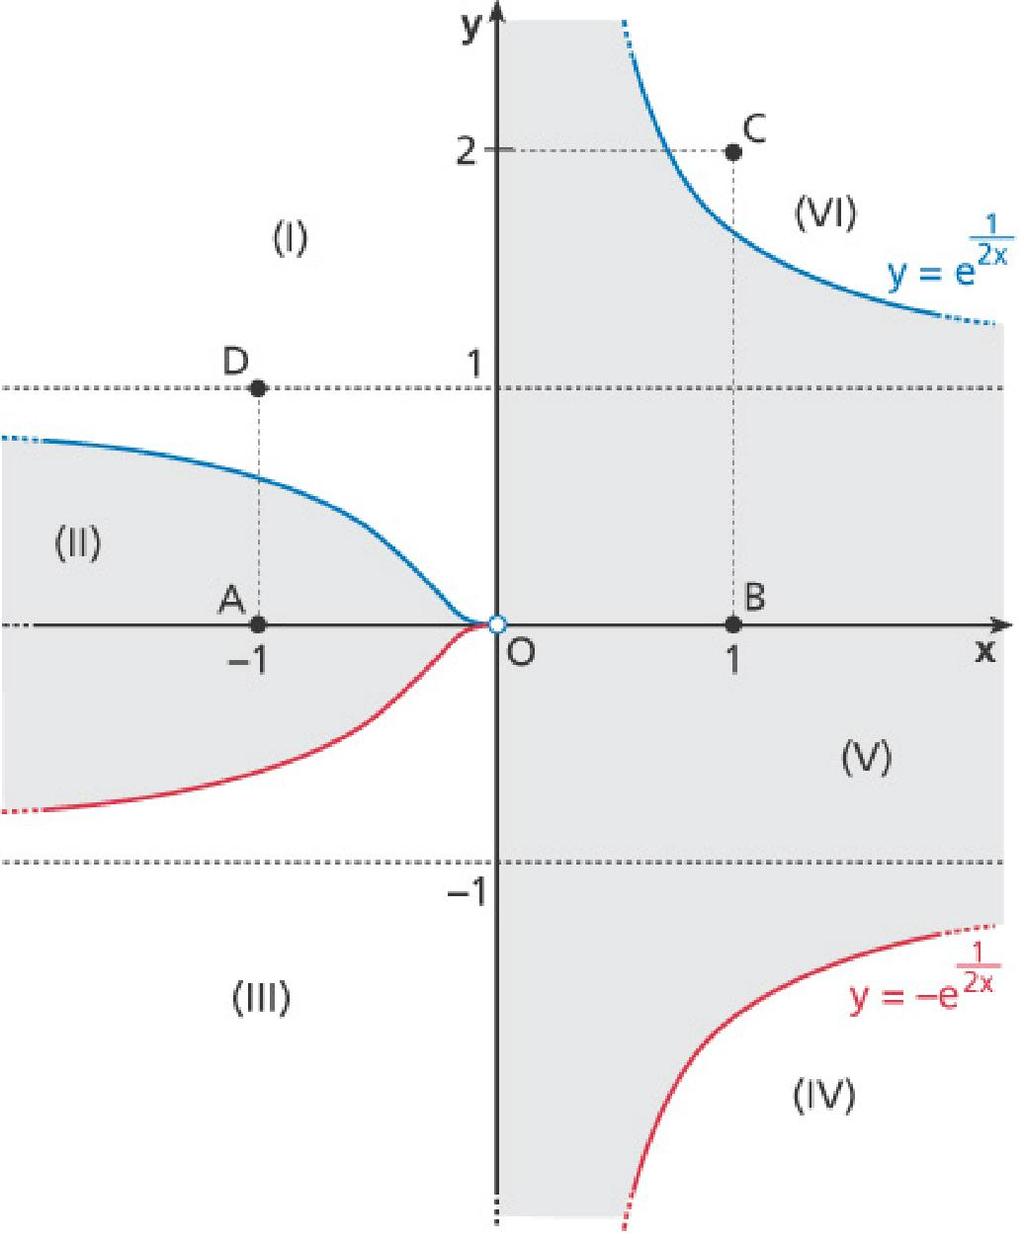 Disegniamo il grafico della curva x y e sfruttando la sua simmetria Il contorno di divide il piano in sei parti; per decidere quali appartengono a scegliamo alcuni punti e vediamo se le